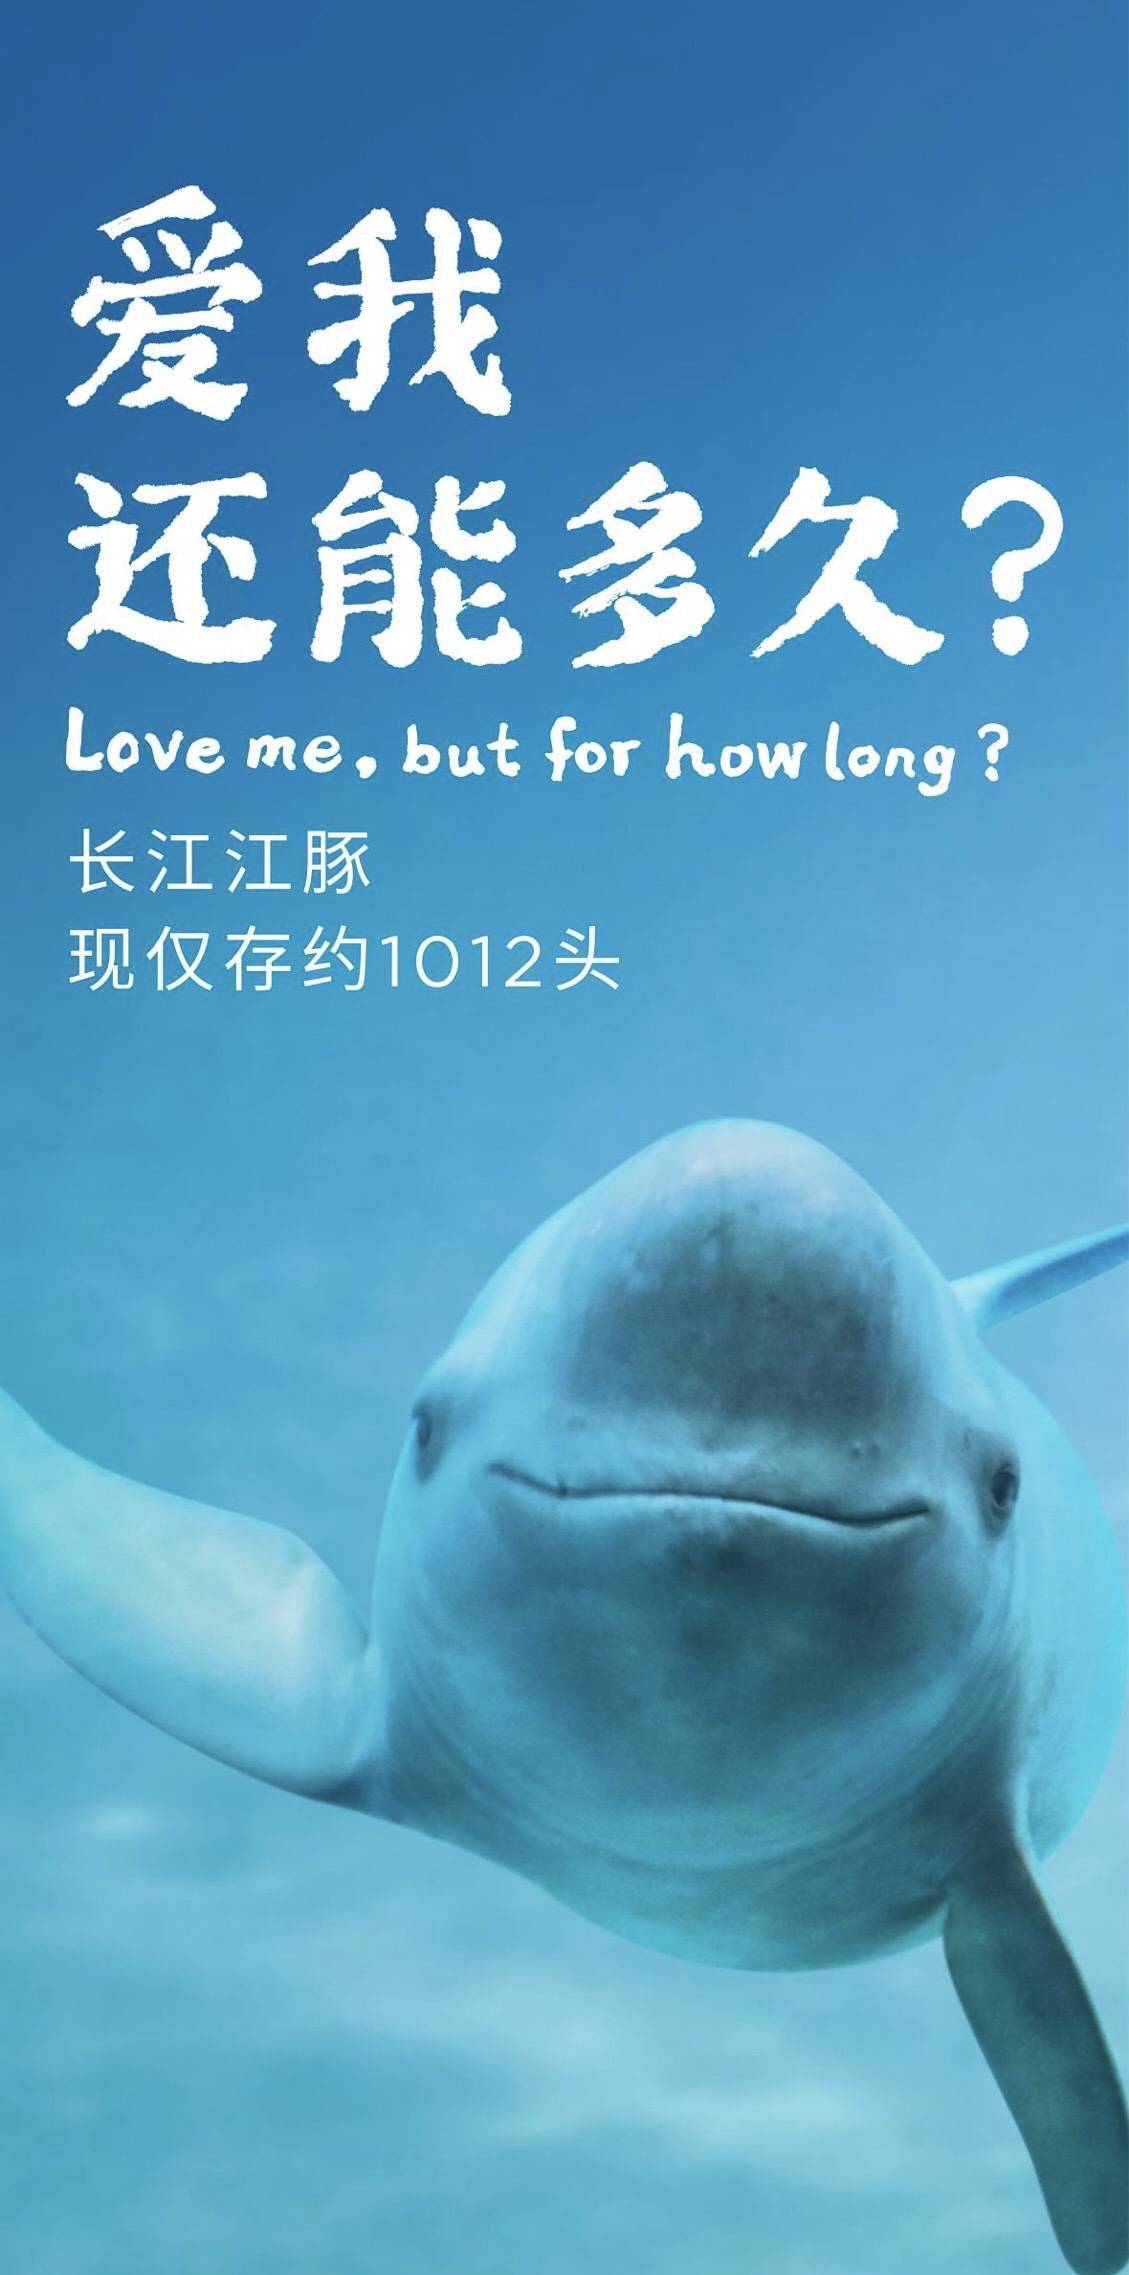 江豚公益海报图片